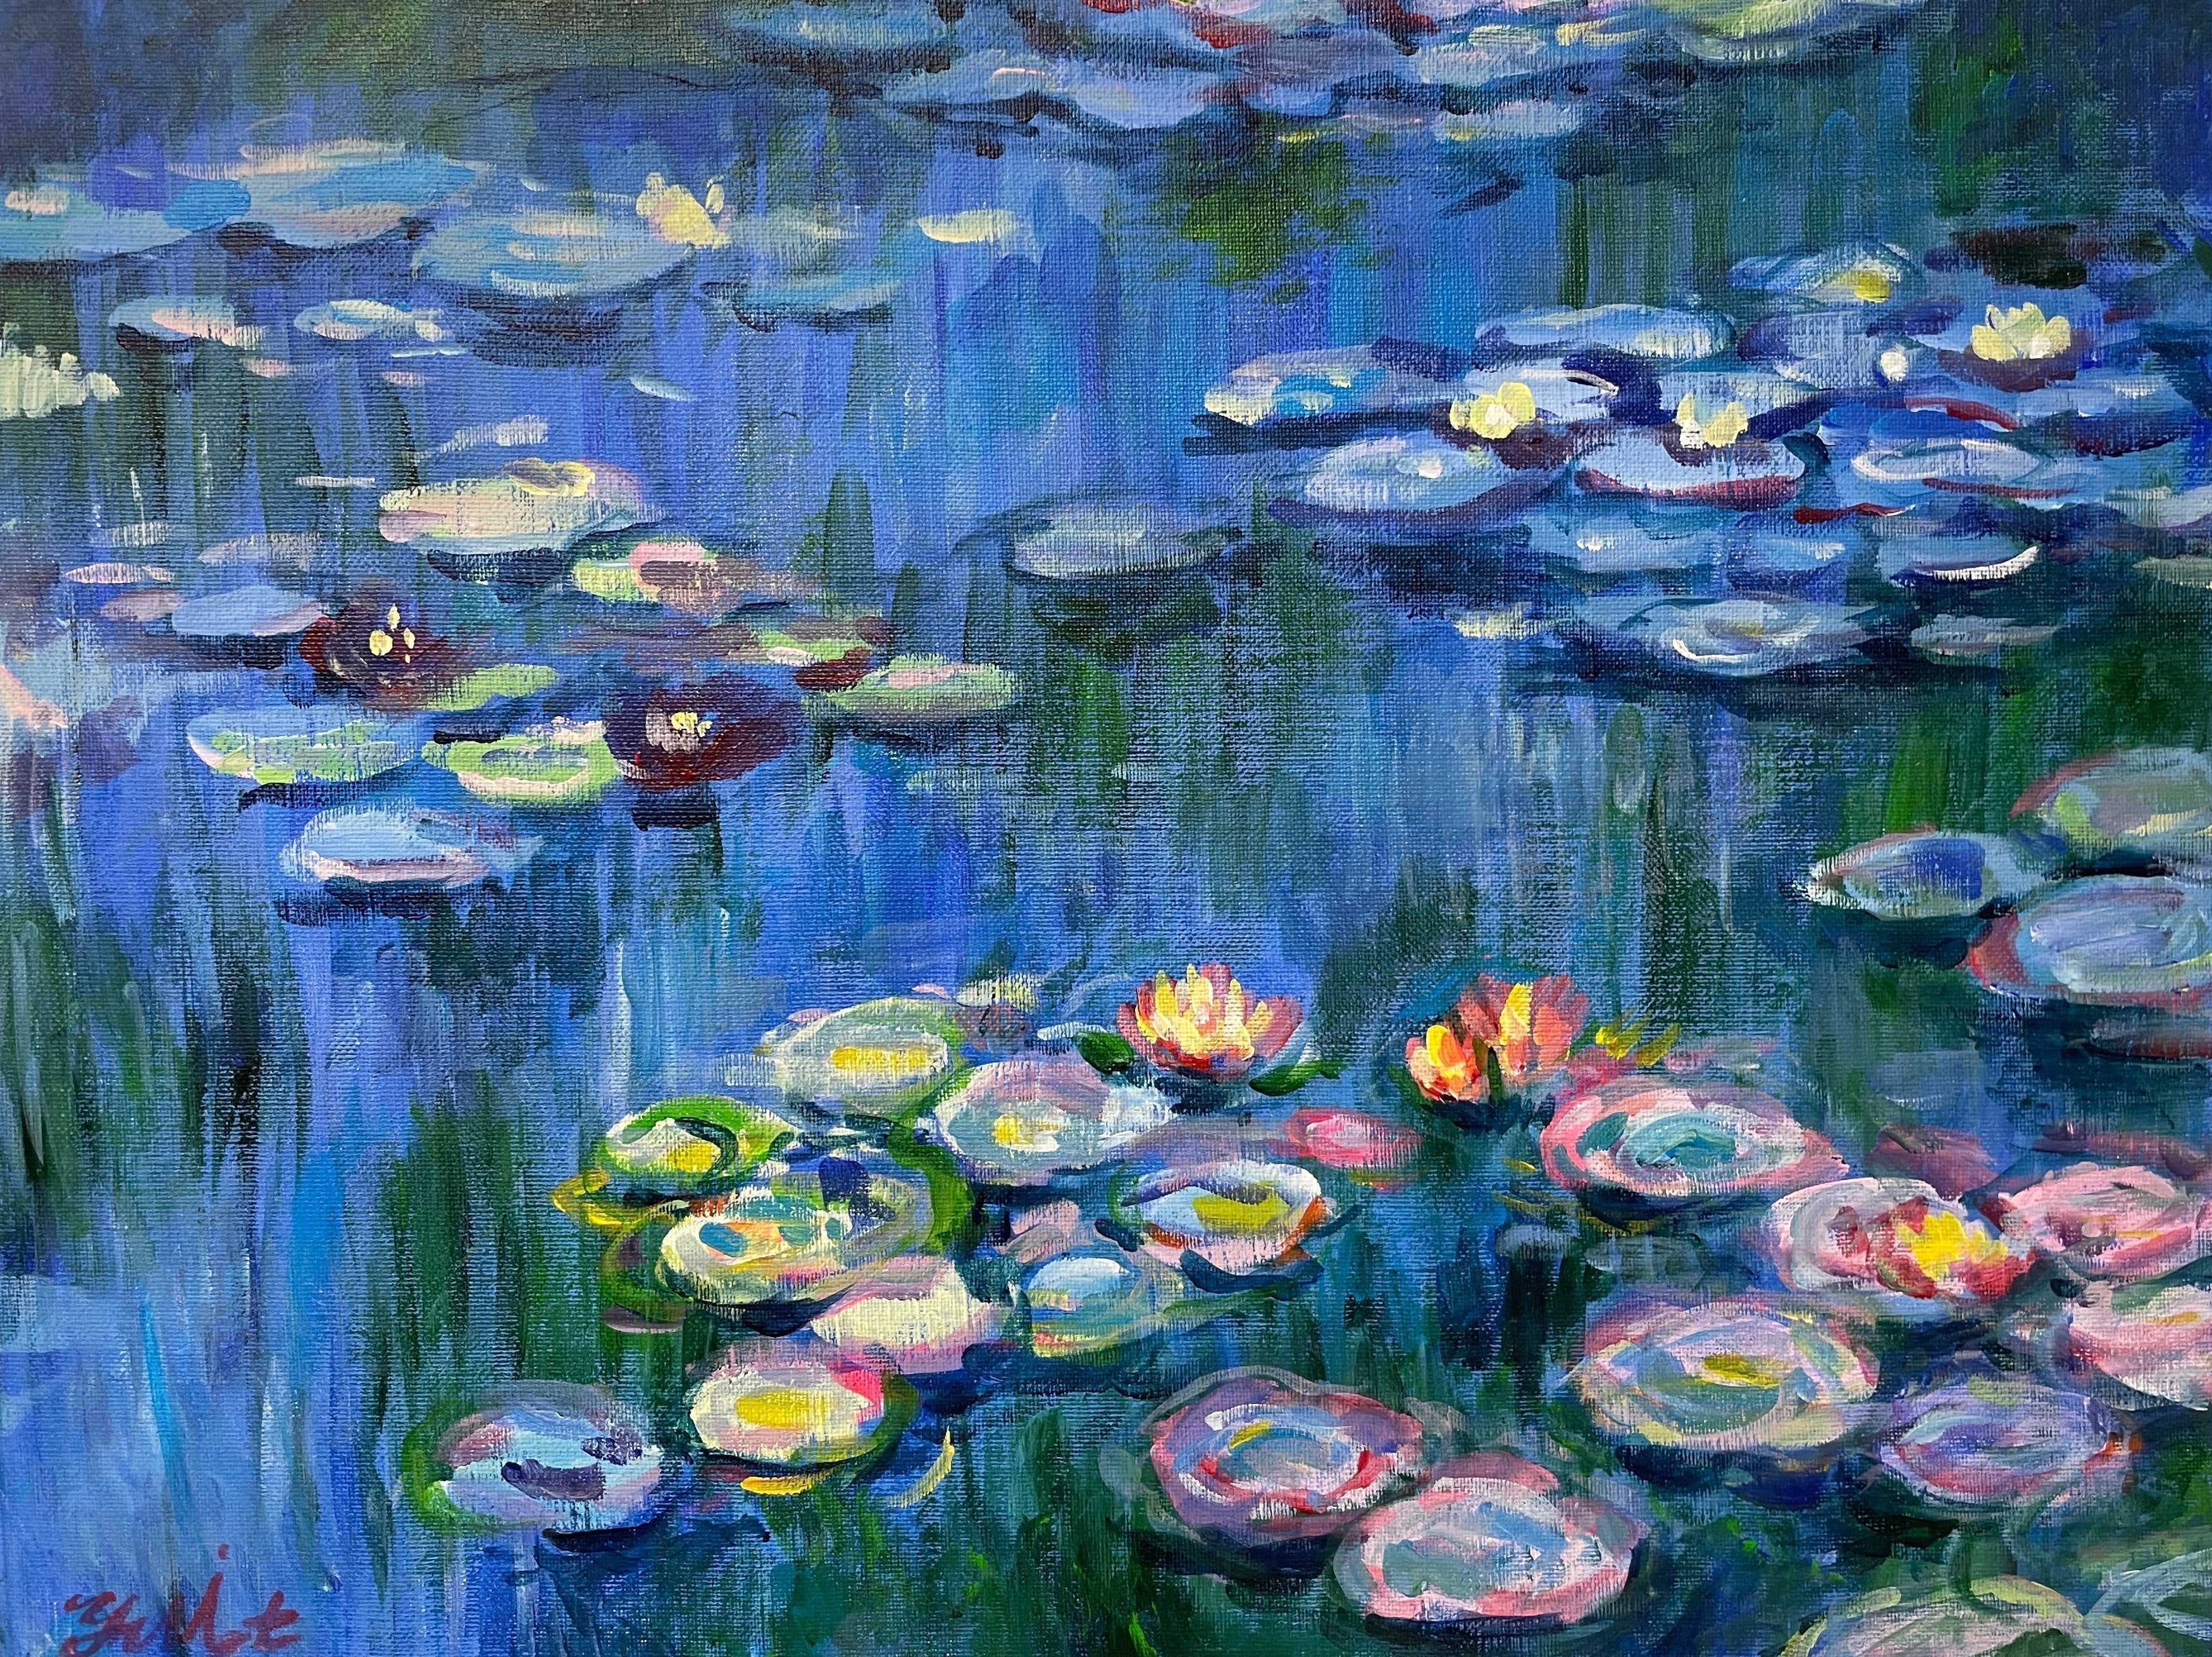 05月03日 (金祝) 14:00-17:00 | 日本橋 | クロード・モネ | 睡蓮 (Water Lilies by Claude Monet at Nihon-bashi)